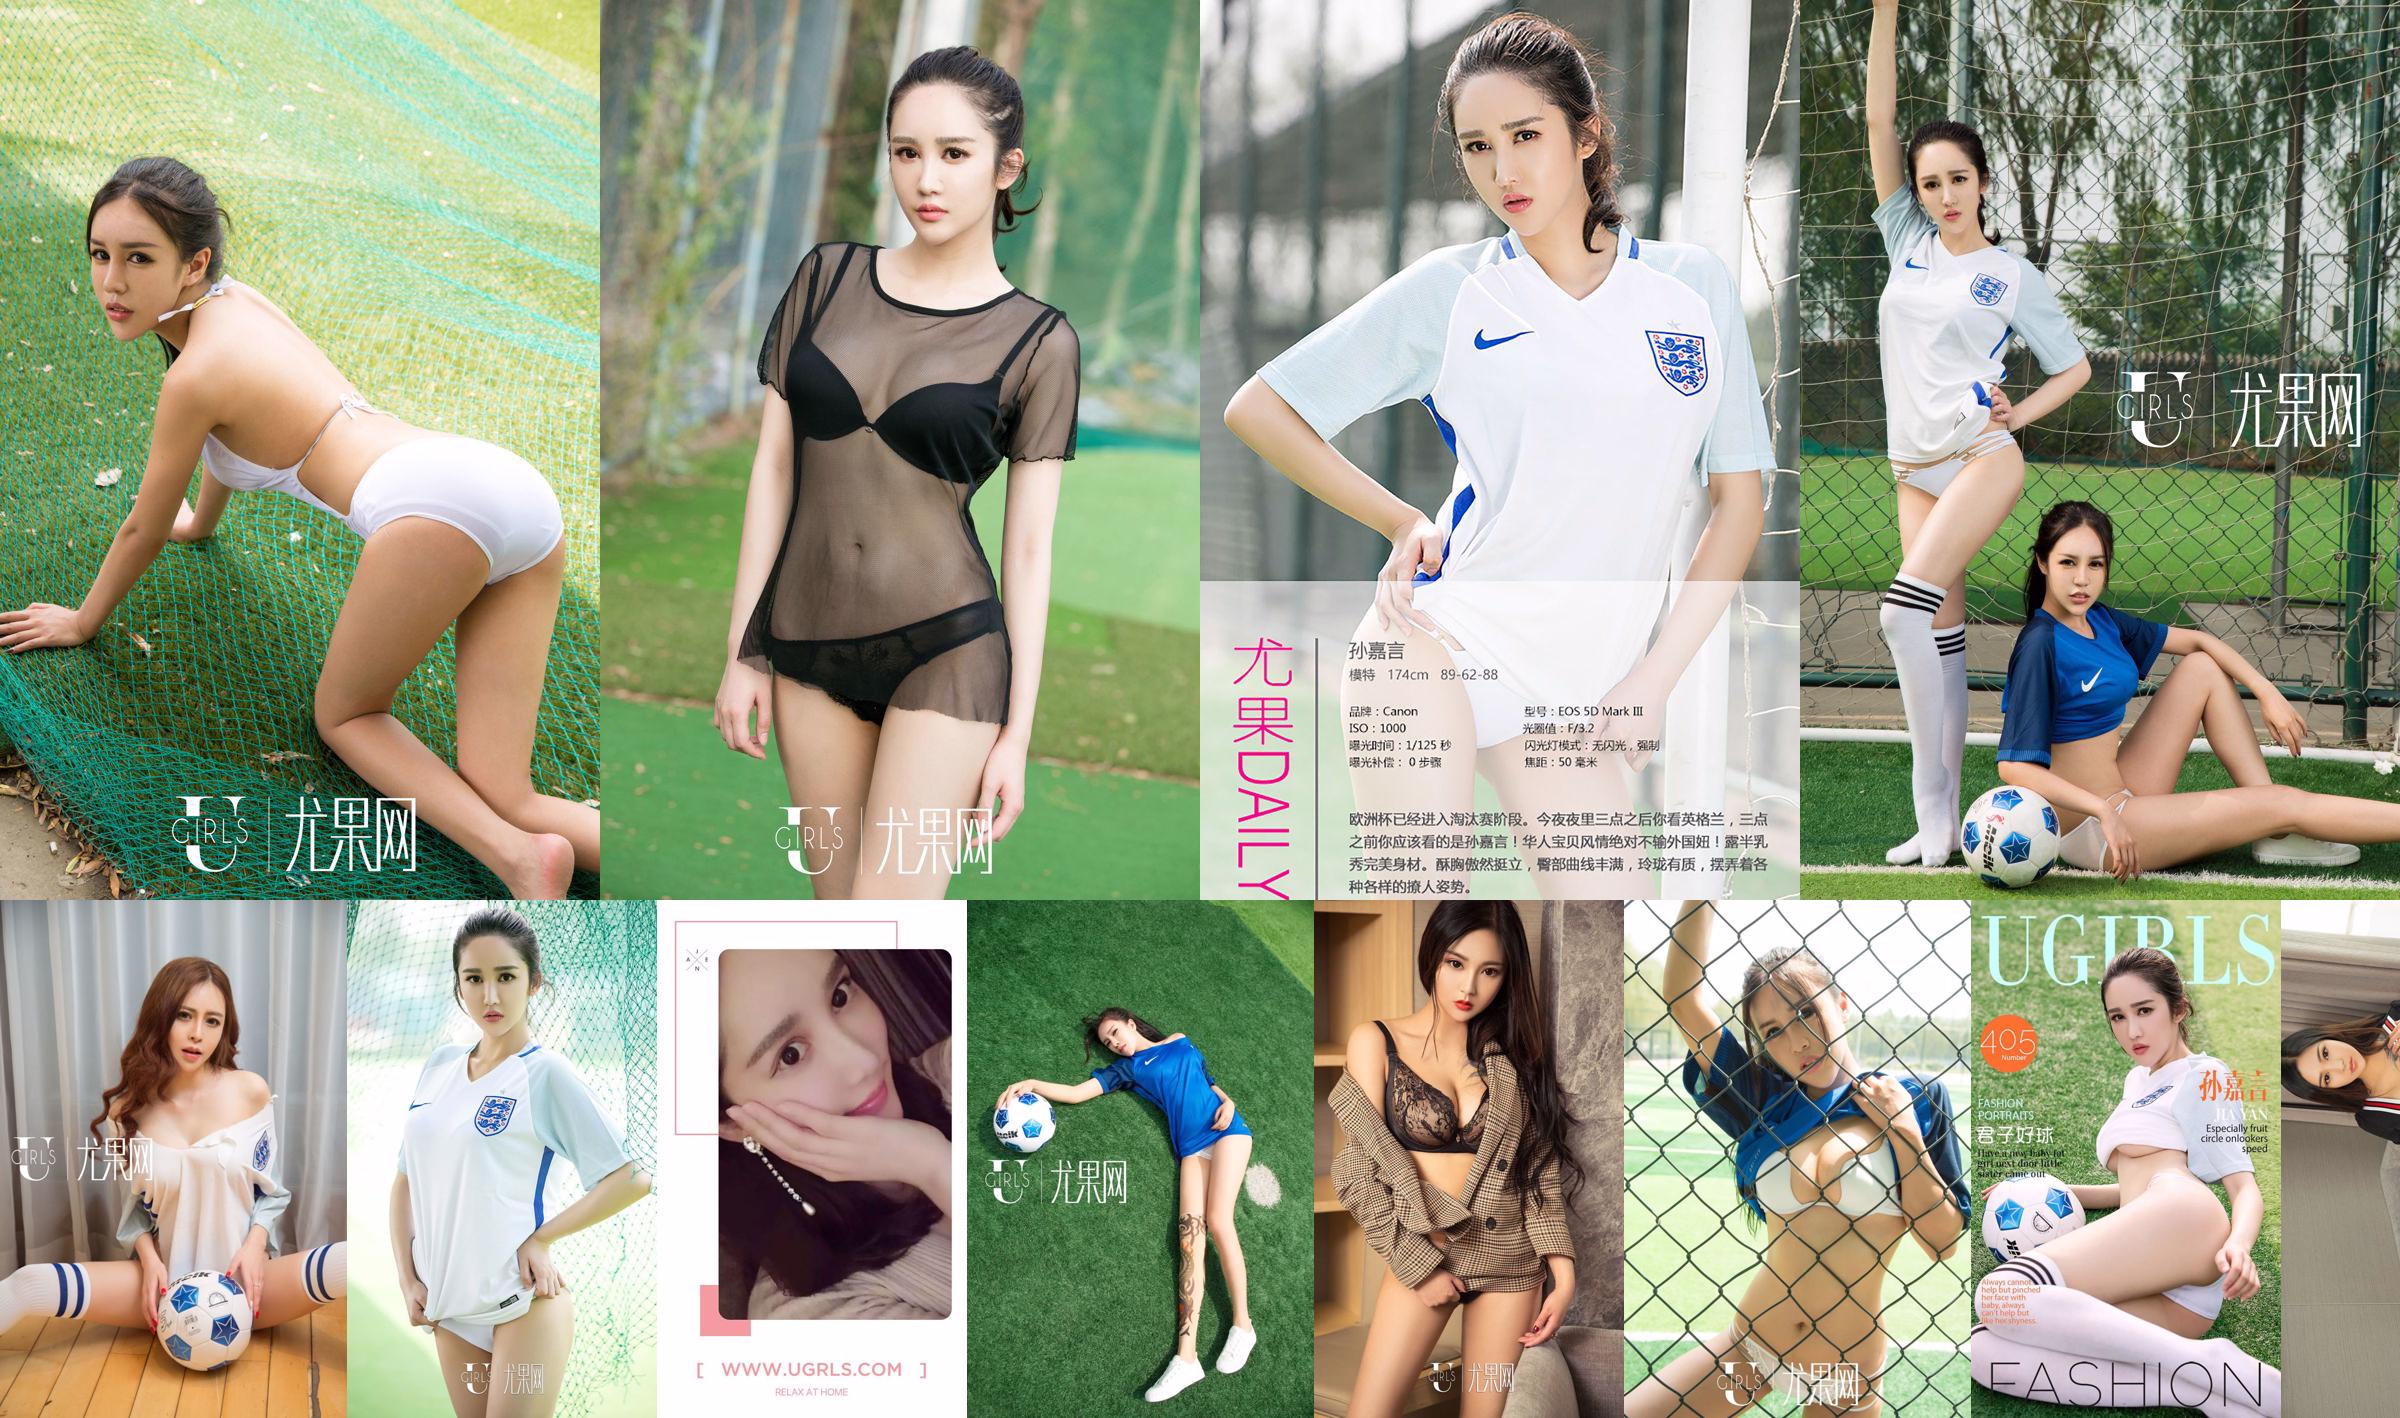 Sun Jiayan / Little Wisteria / Jin Xin / Li Yaying / Chun Jiao "Football Baby" [Ugirls] T019 No.67f5e4 Halaman 1